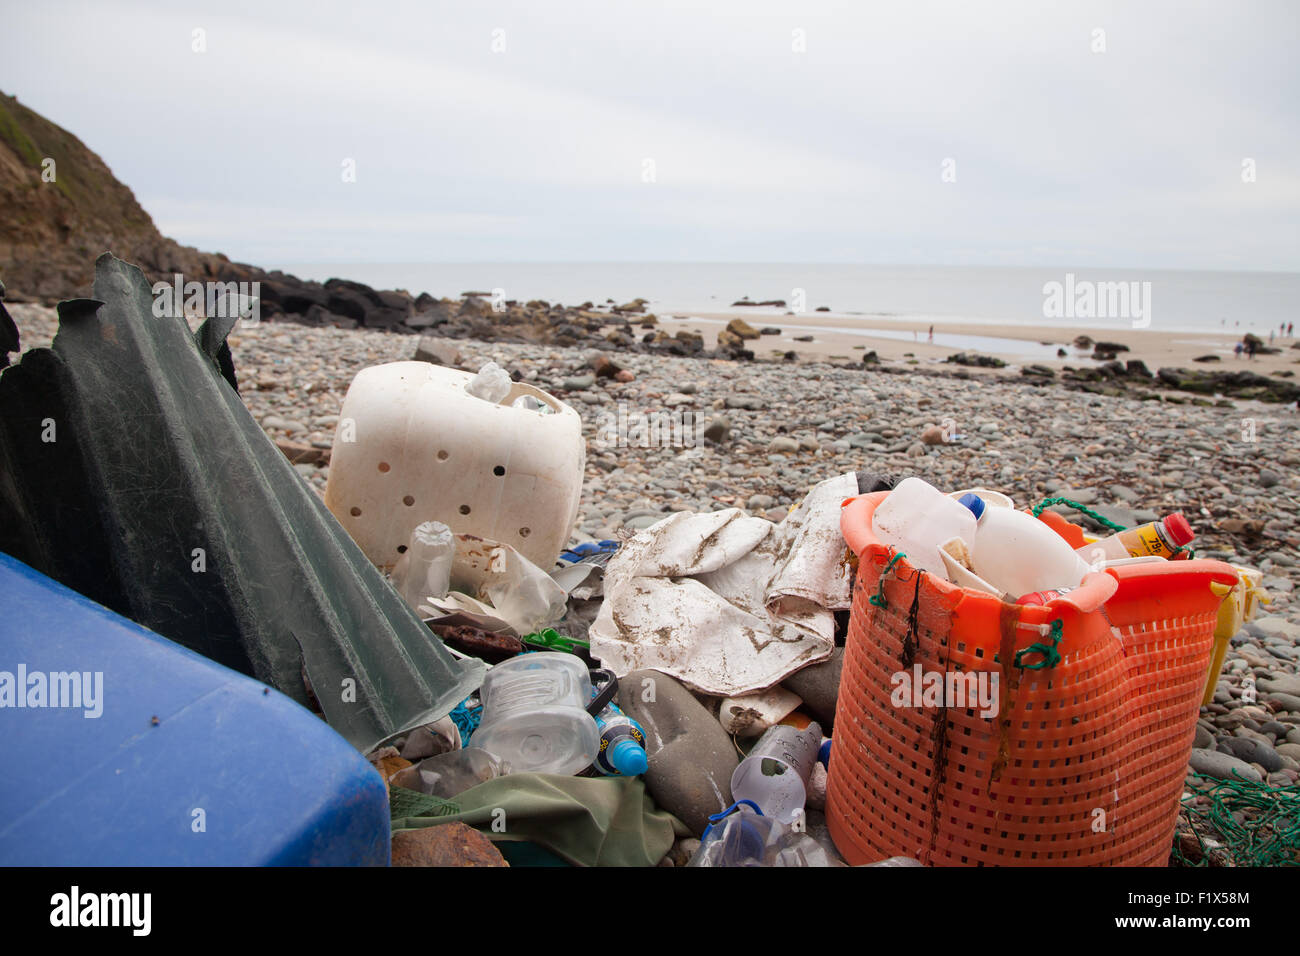 Rifiuti di plastica / i rifiuti che sono stati raccolti / ordinate sulla spiaggia di Porth Ysgo, Llanfaelrhys, Aberdaron, Llyn Peninsula Foto Stock